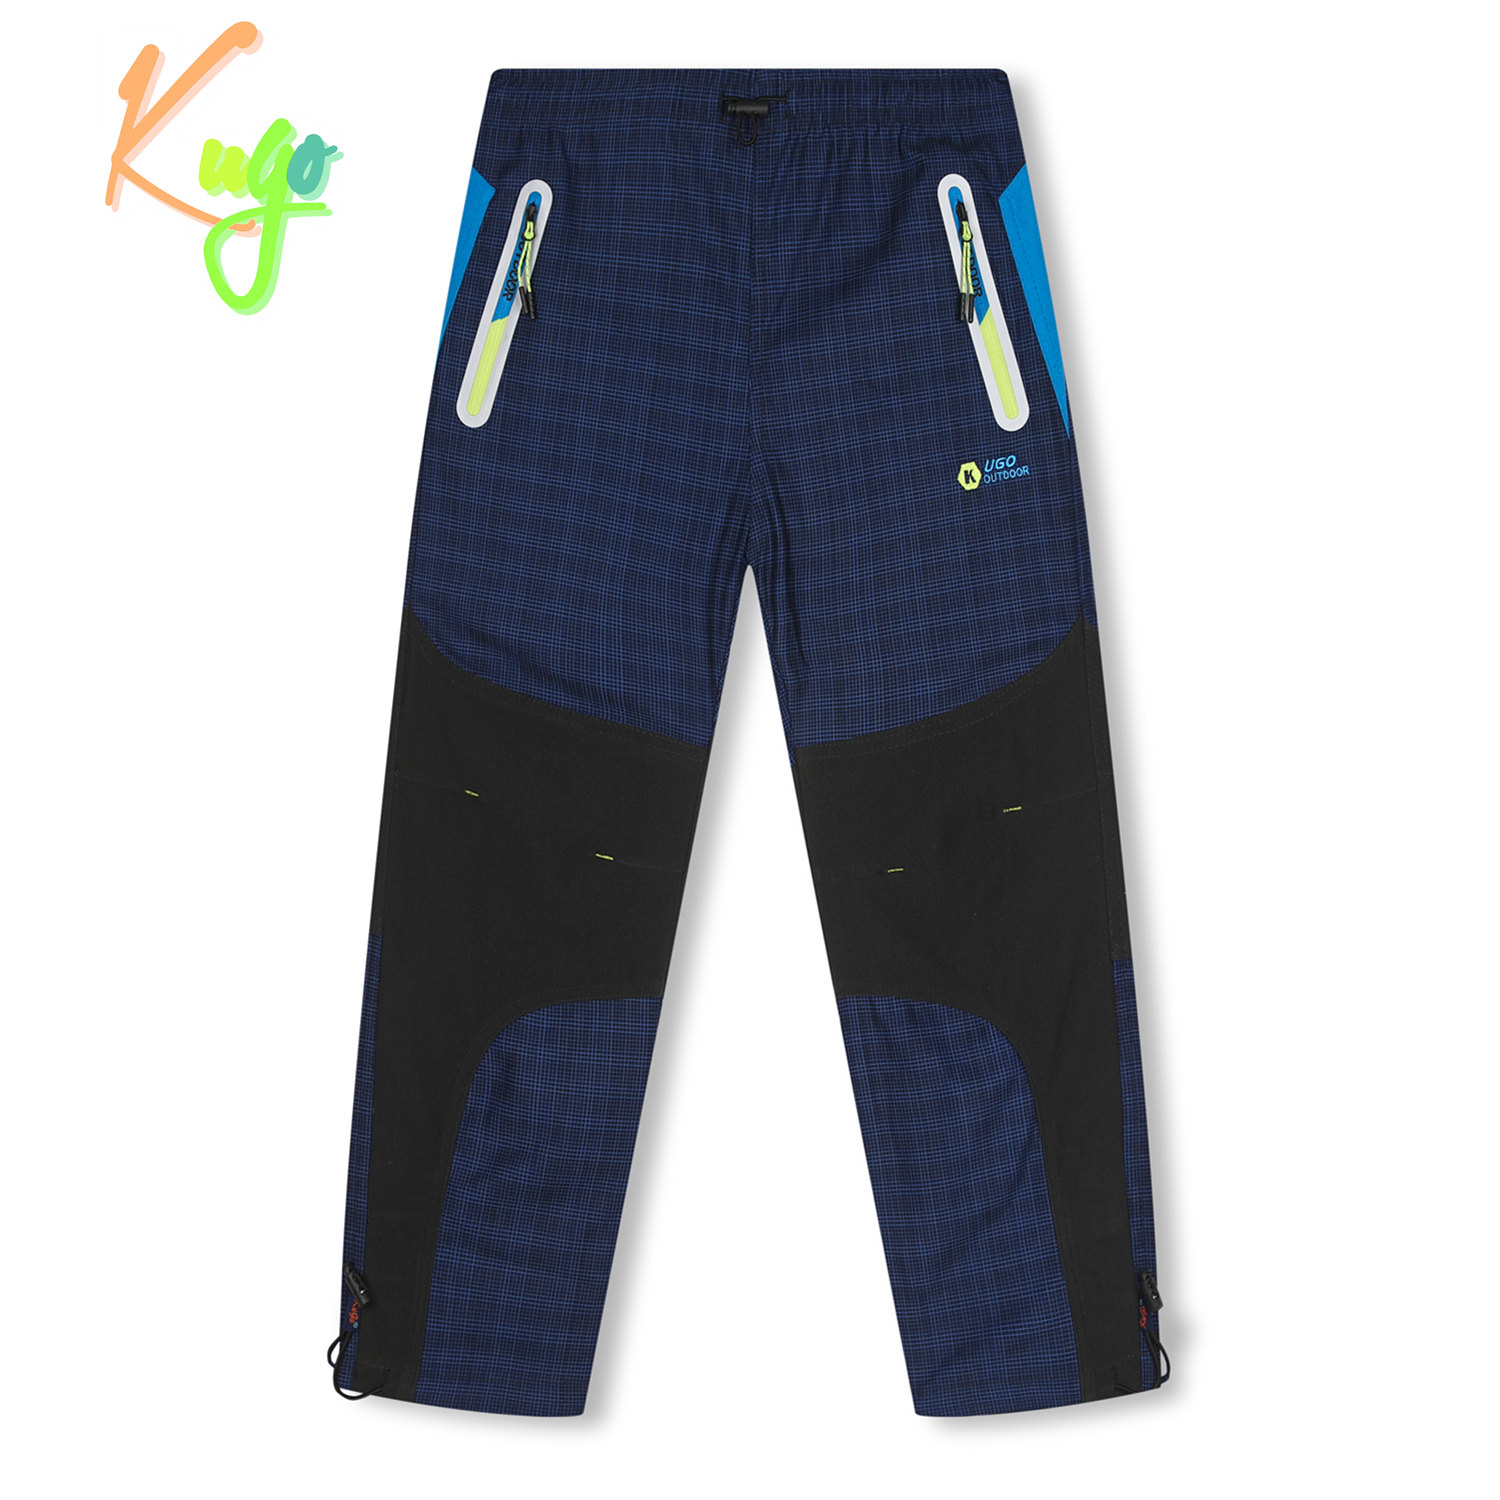 Chlapecké outdoorové kalhoty - KUGO G9651, modrá / signální zip Barva: Modrá, Velikost: 146